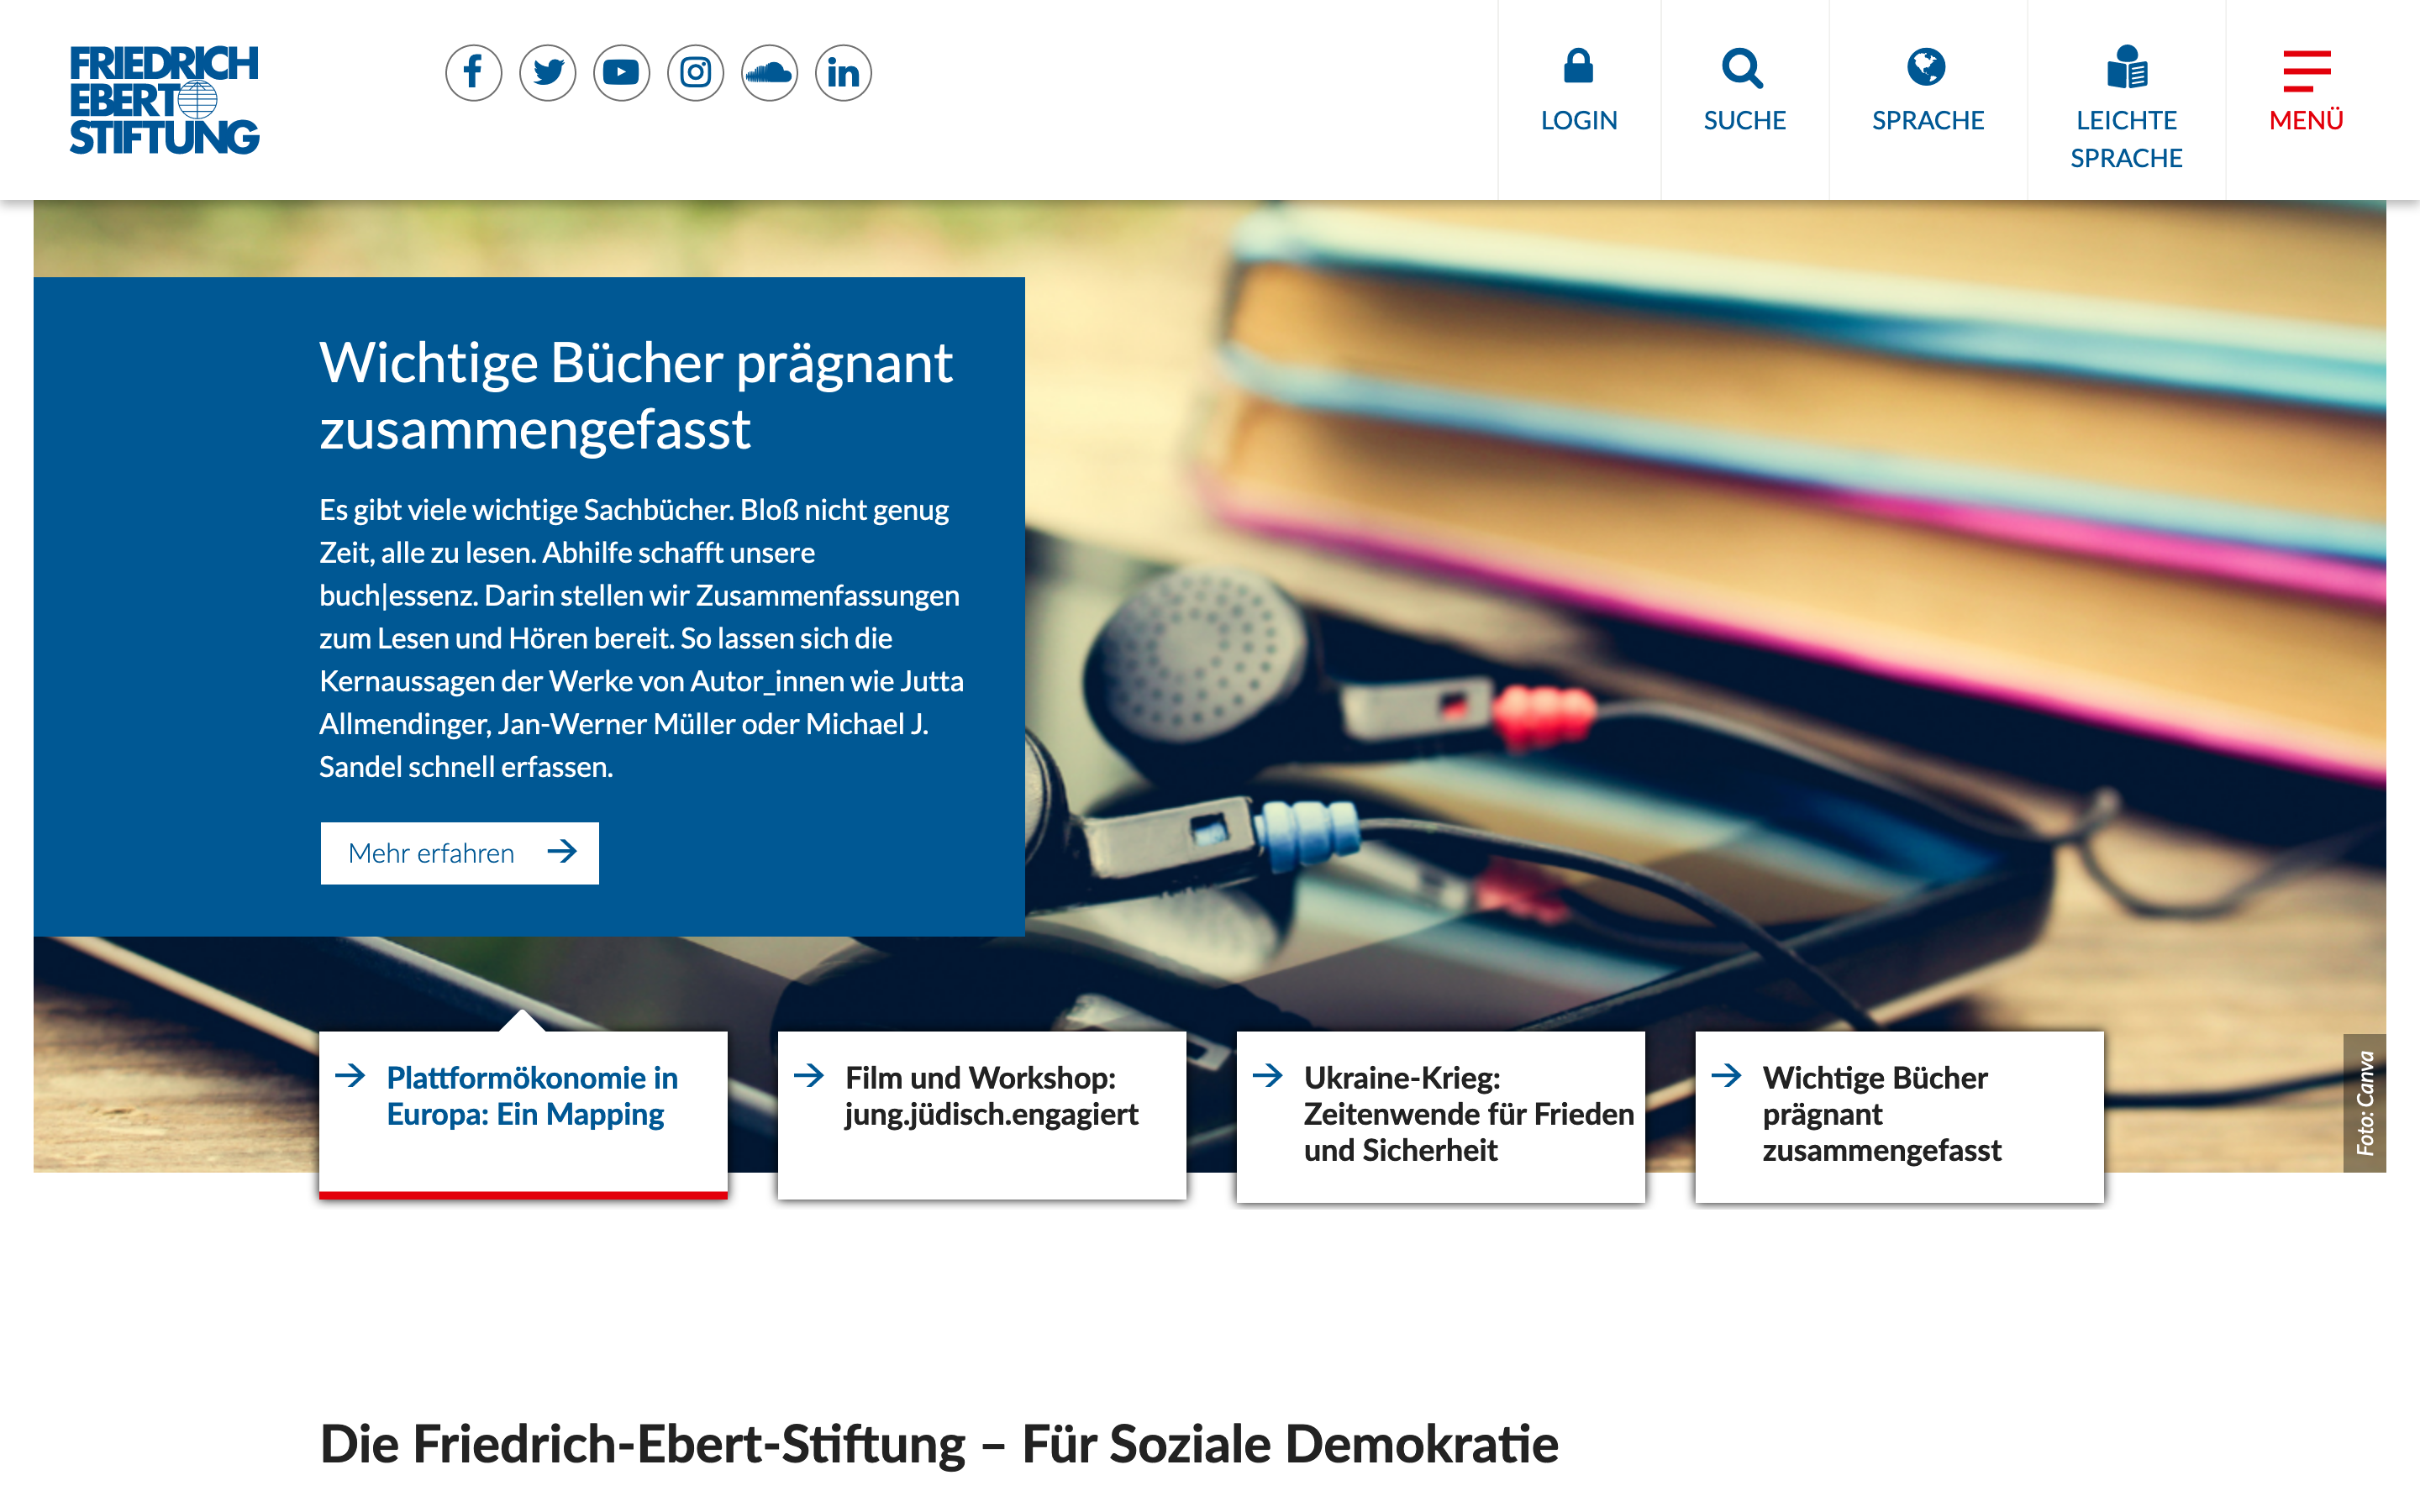 Friedrich-Ebert-Stiftung TYPO3 website excerpt